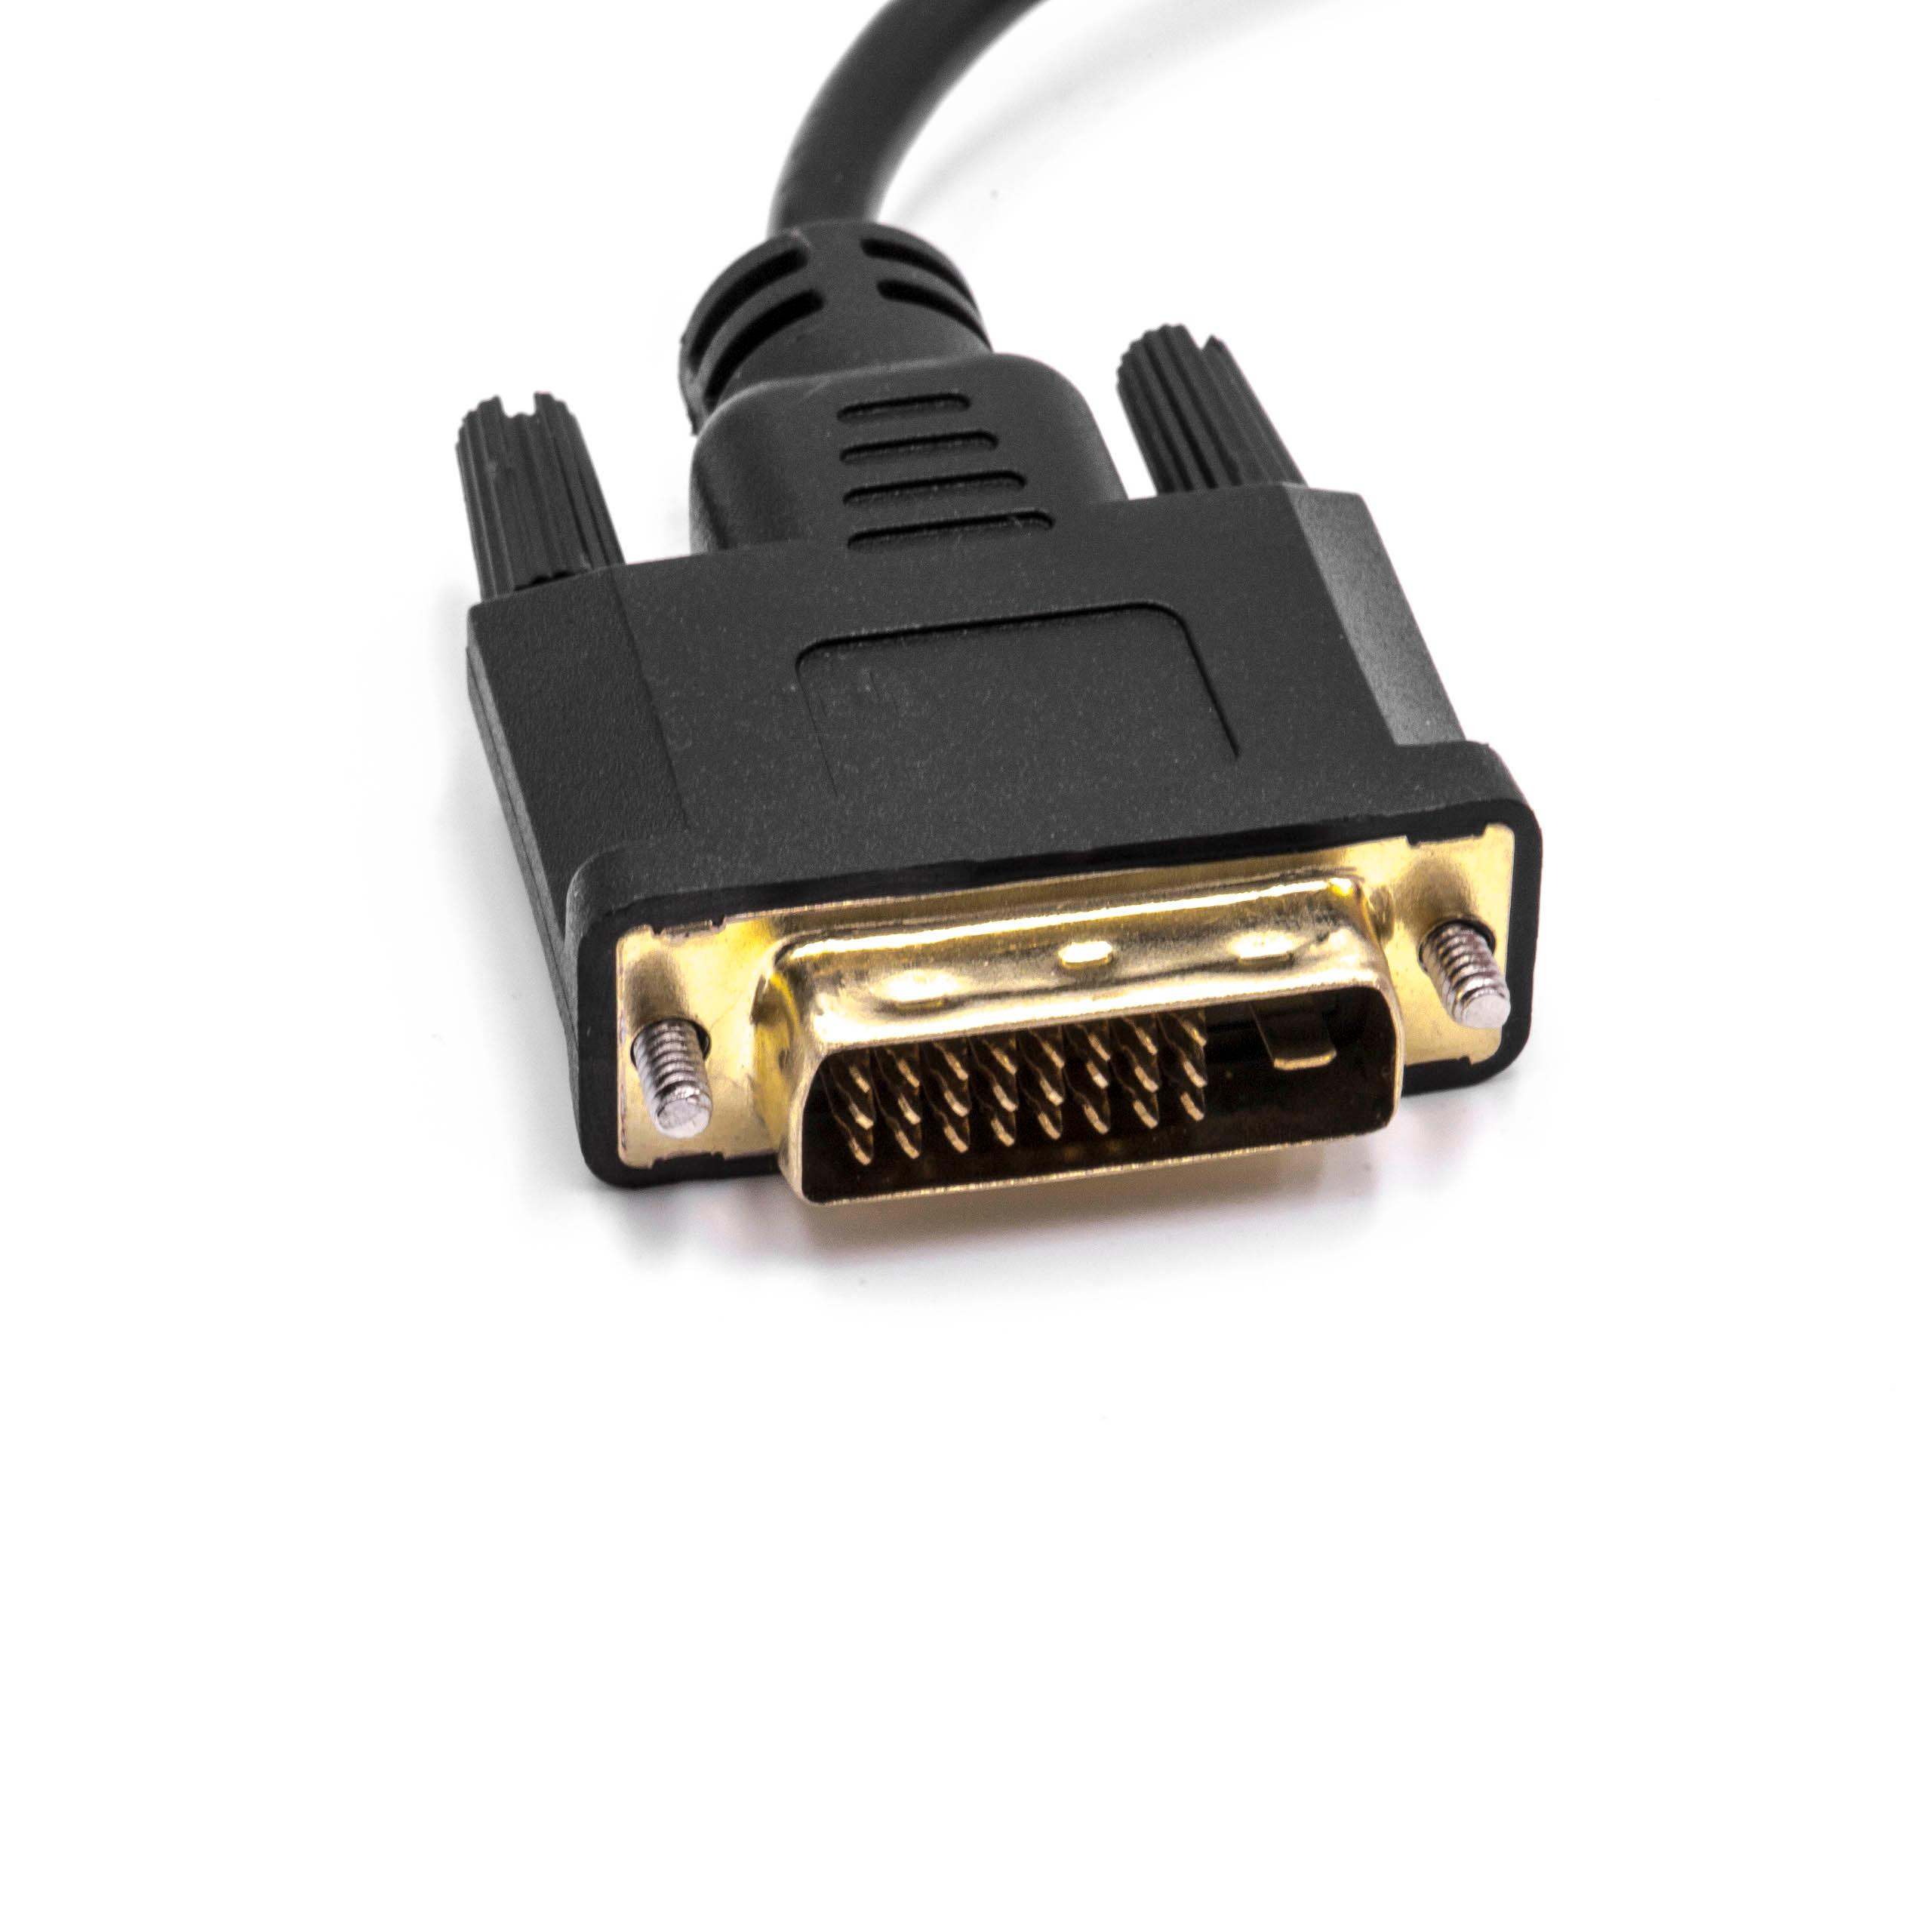 Adapter konwerter DVI wtyk na gniazdo VGA - do podłączenia systemów DVI do urządzeń VGA, 10 cm